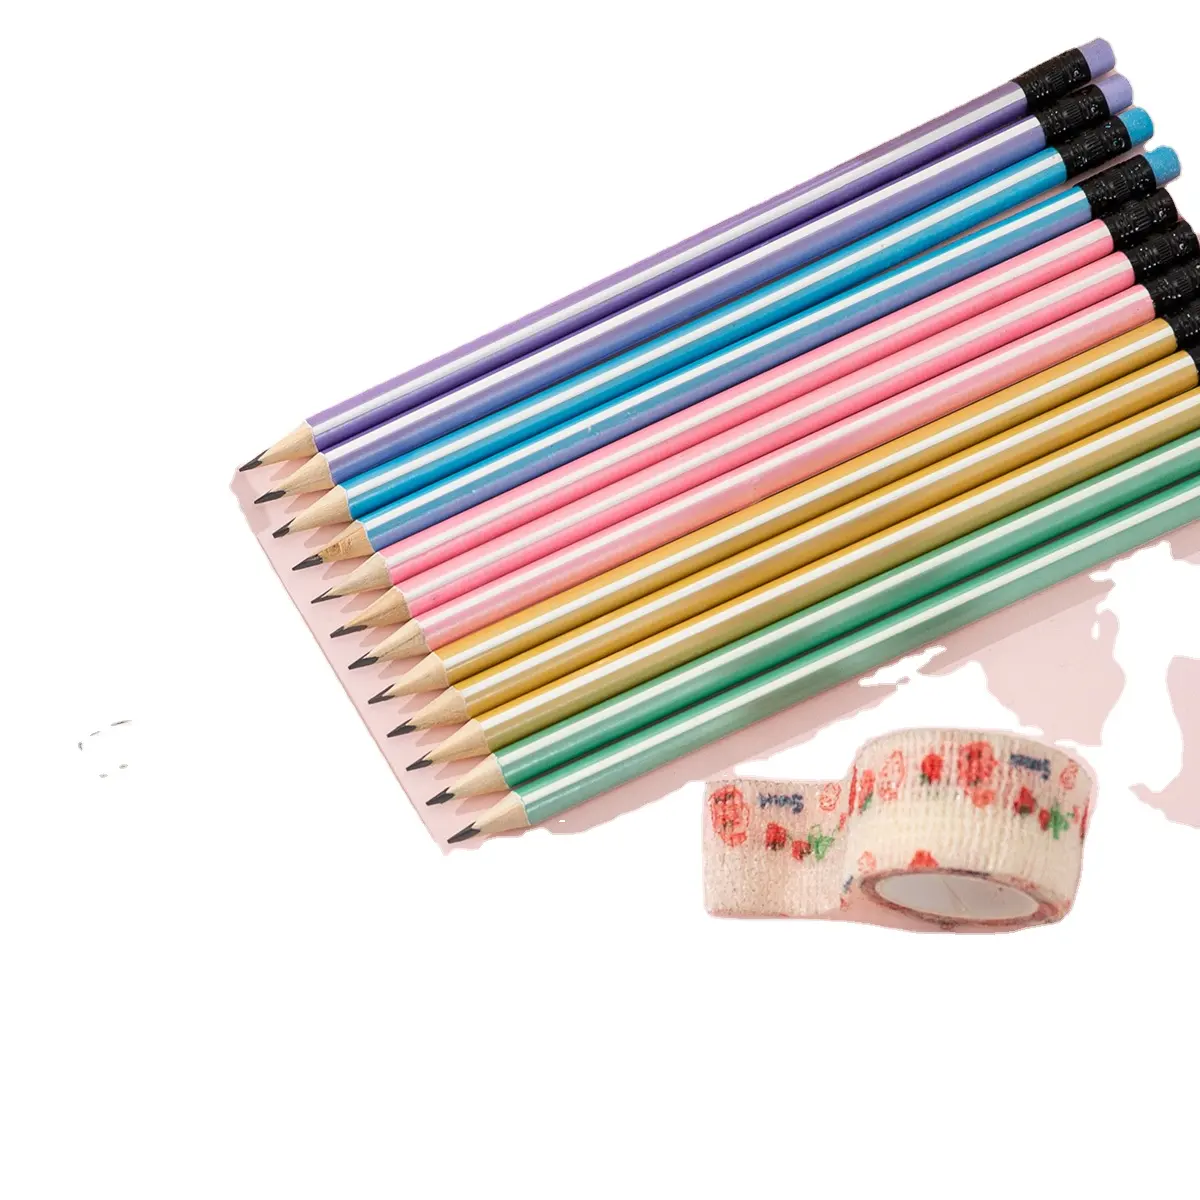 ألوان متعددة من كيس لوشعار حسب الطلب HB 2B أقلام رصاص خشبية سوداء اللون مع ادوات مدرسية للأطفال